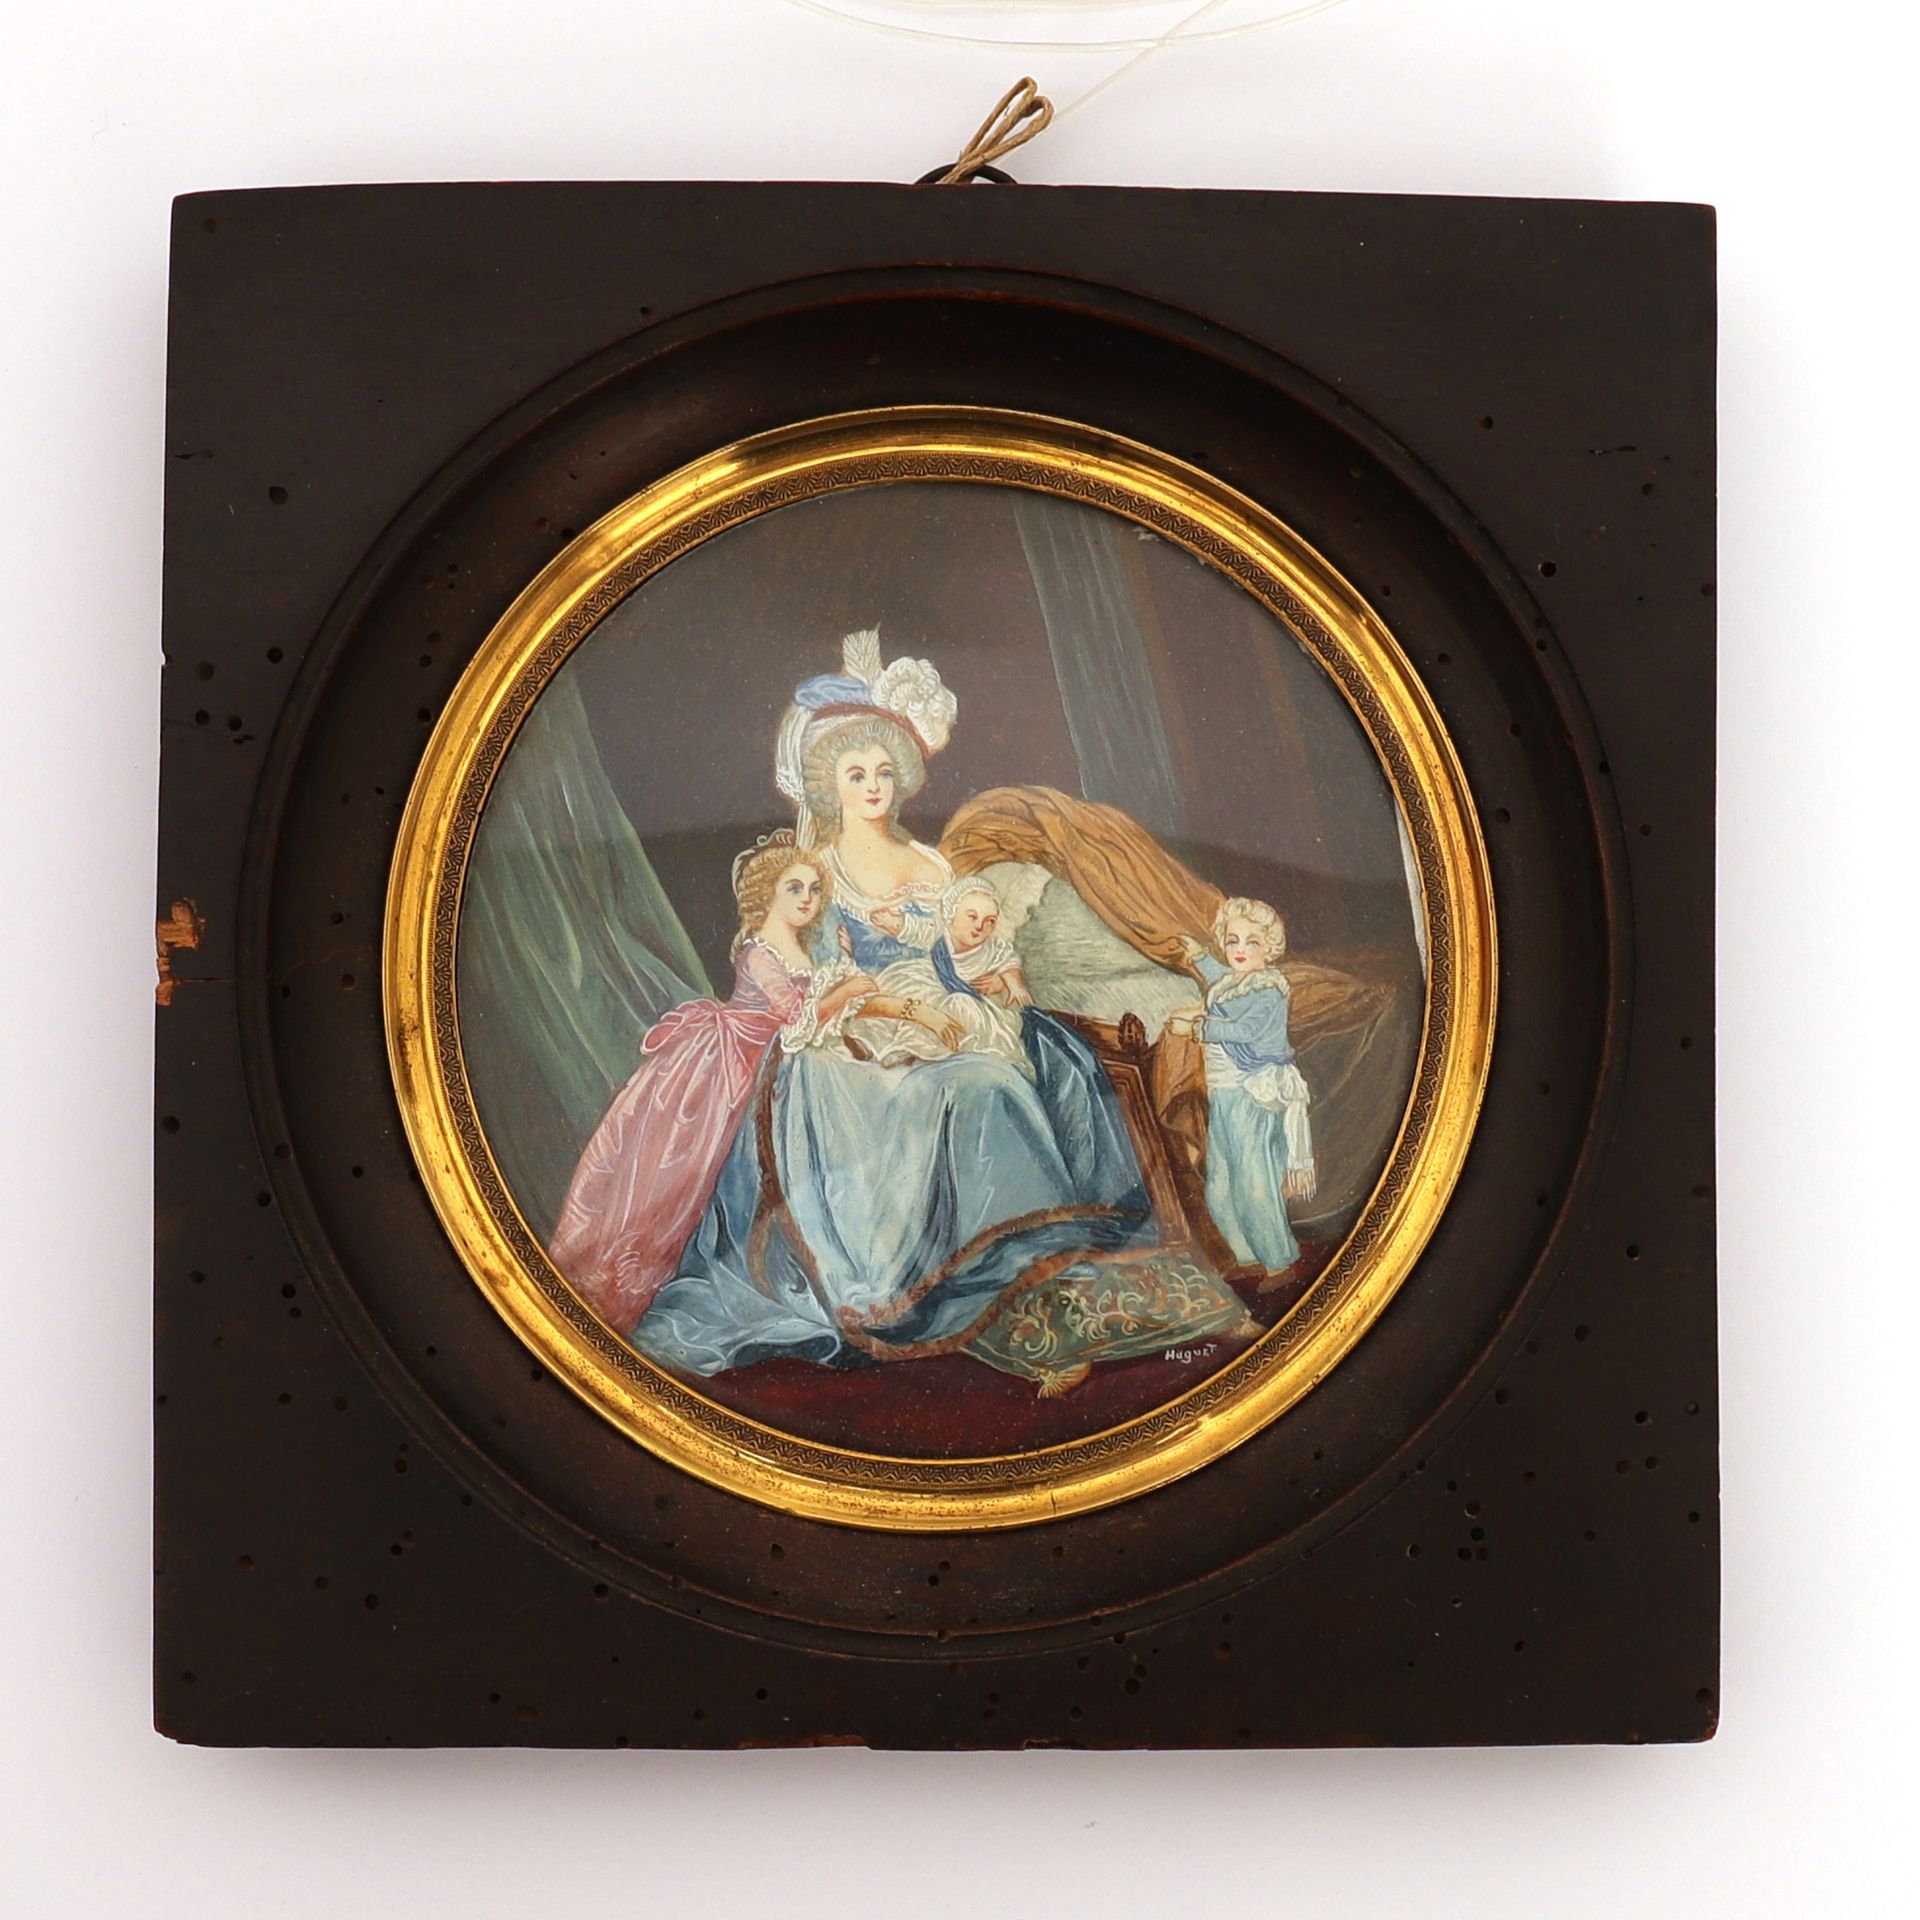 Null 小型作品 "玛丽-安托瓦内特和她的孩子们"，作者：HUGUET

仿照伊丽莎白-路易丝-维热-勒布伦1787年的名画《玛丽-安托瓦内特和她的孩子》，保&hellip;